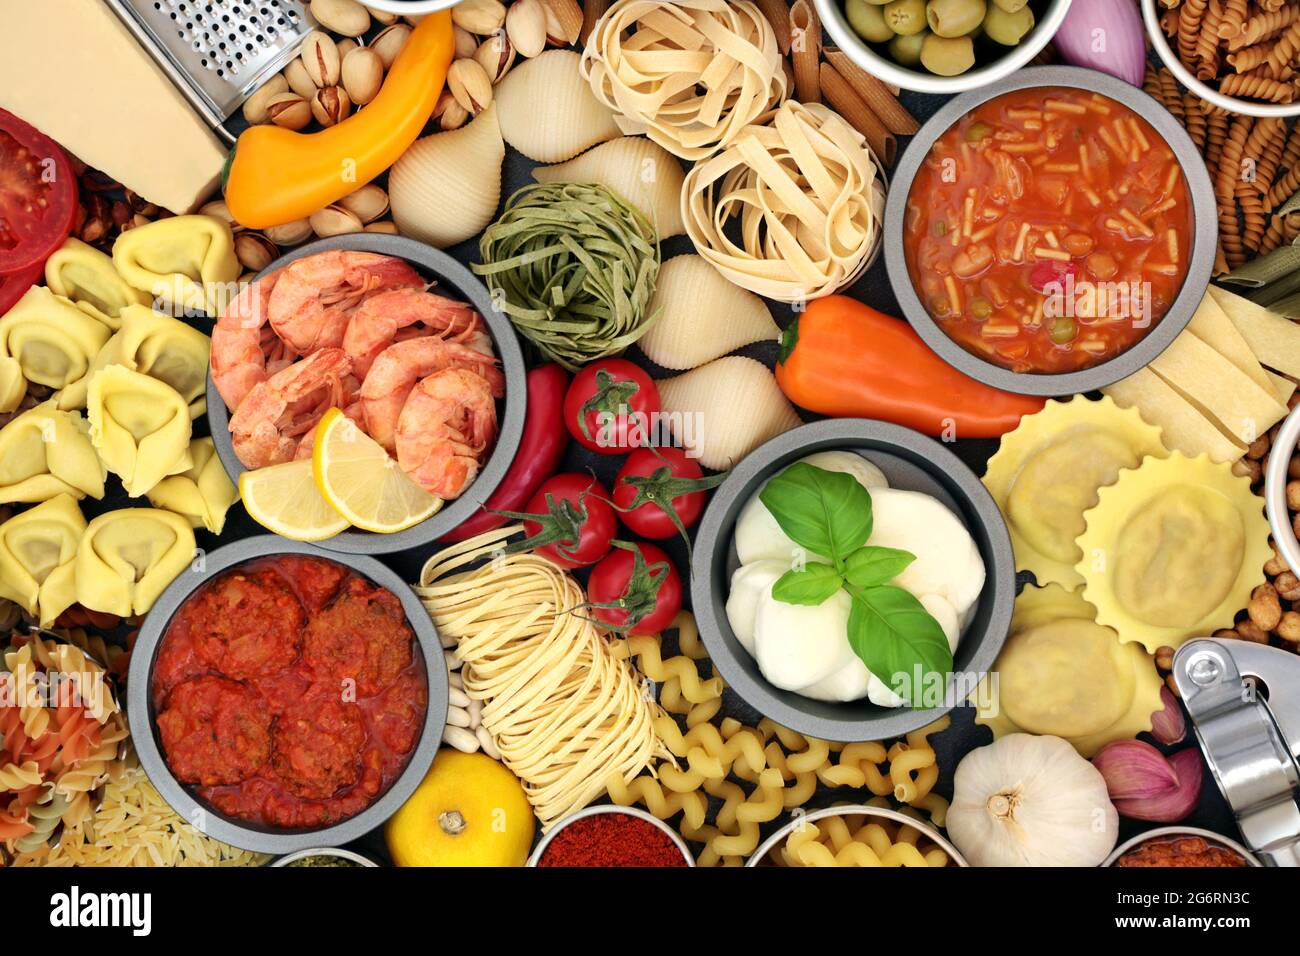 Italienische gesunde Lebensmittel für eine ausgewogene Ernährung mit hohem Gehalt an Antioxidantien, Anthocyanen, Ballaststoffen, Lycopin, Omega 3 und Protein. Stockfoto